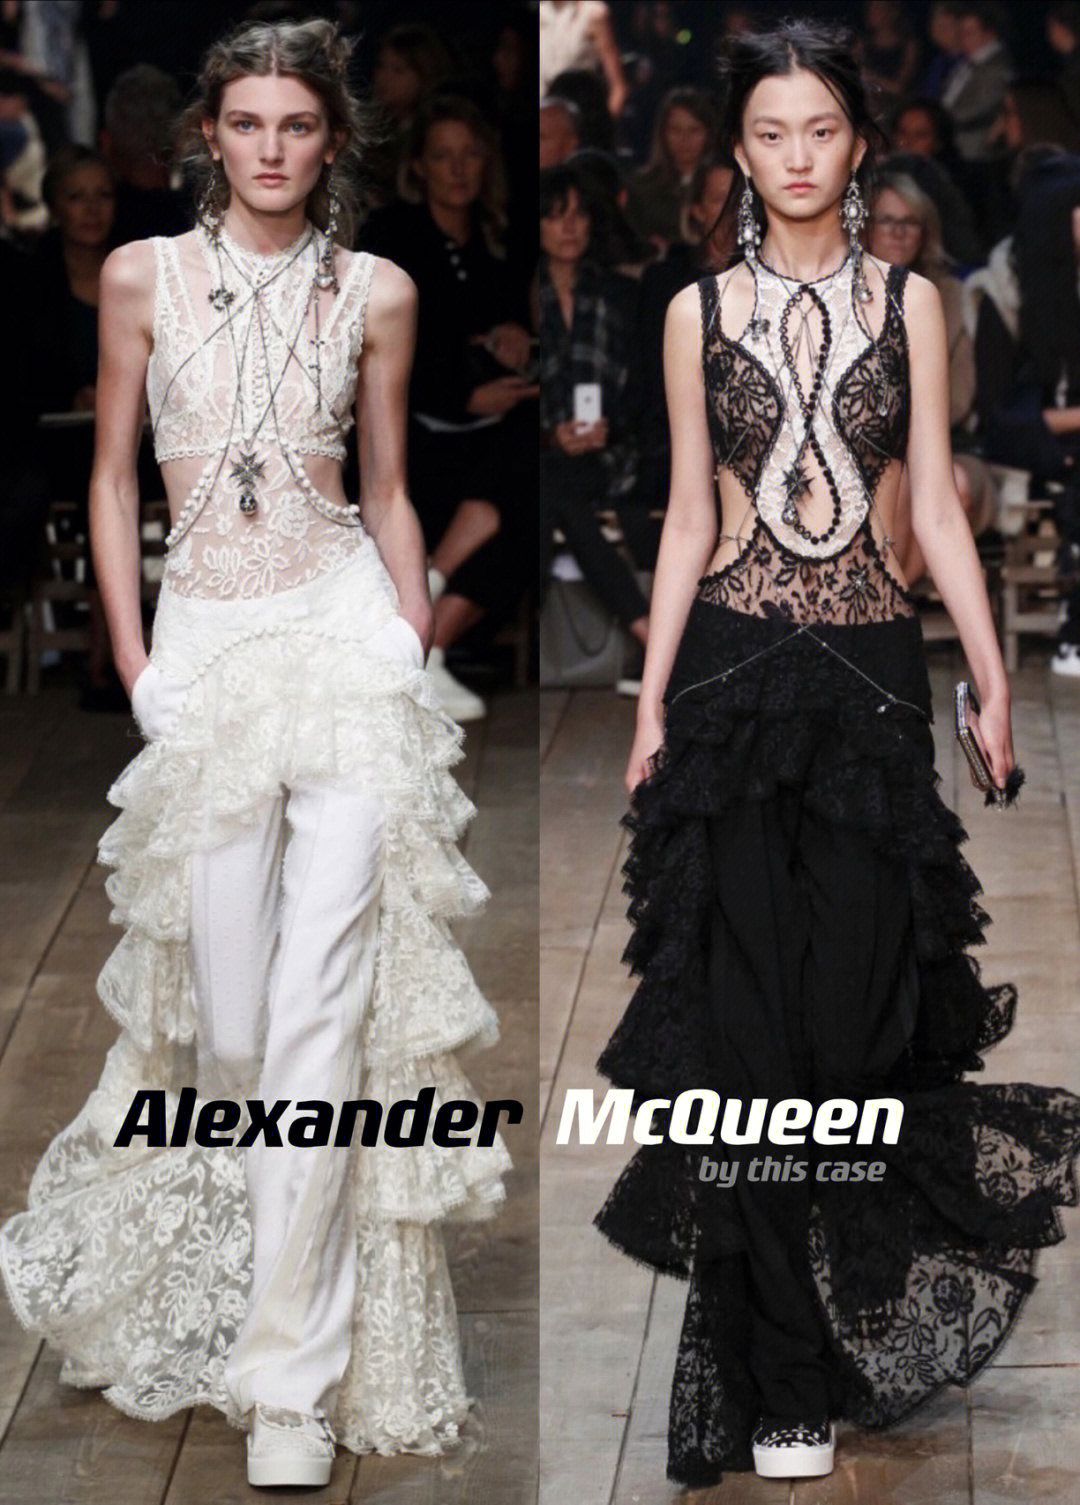 一眼就可以认出的alexander mcqueen把极简风格的代表色黑白设计的